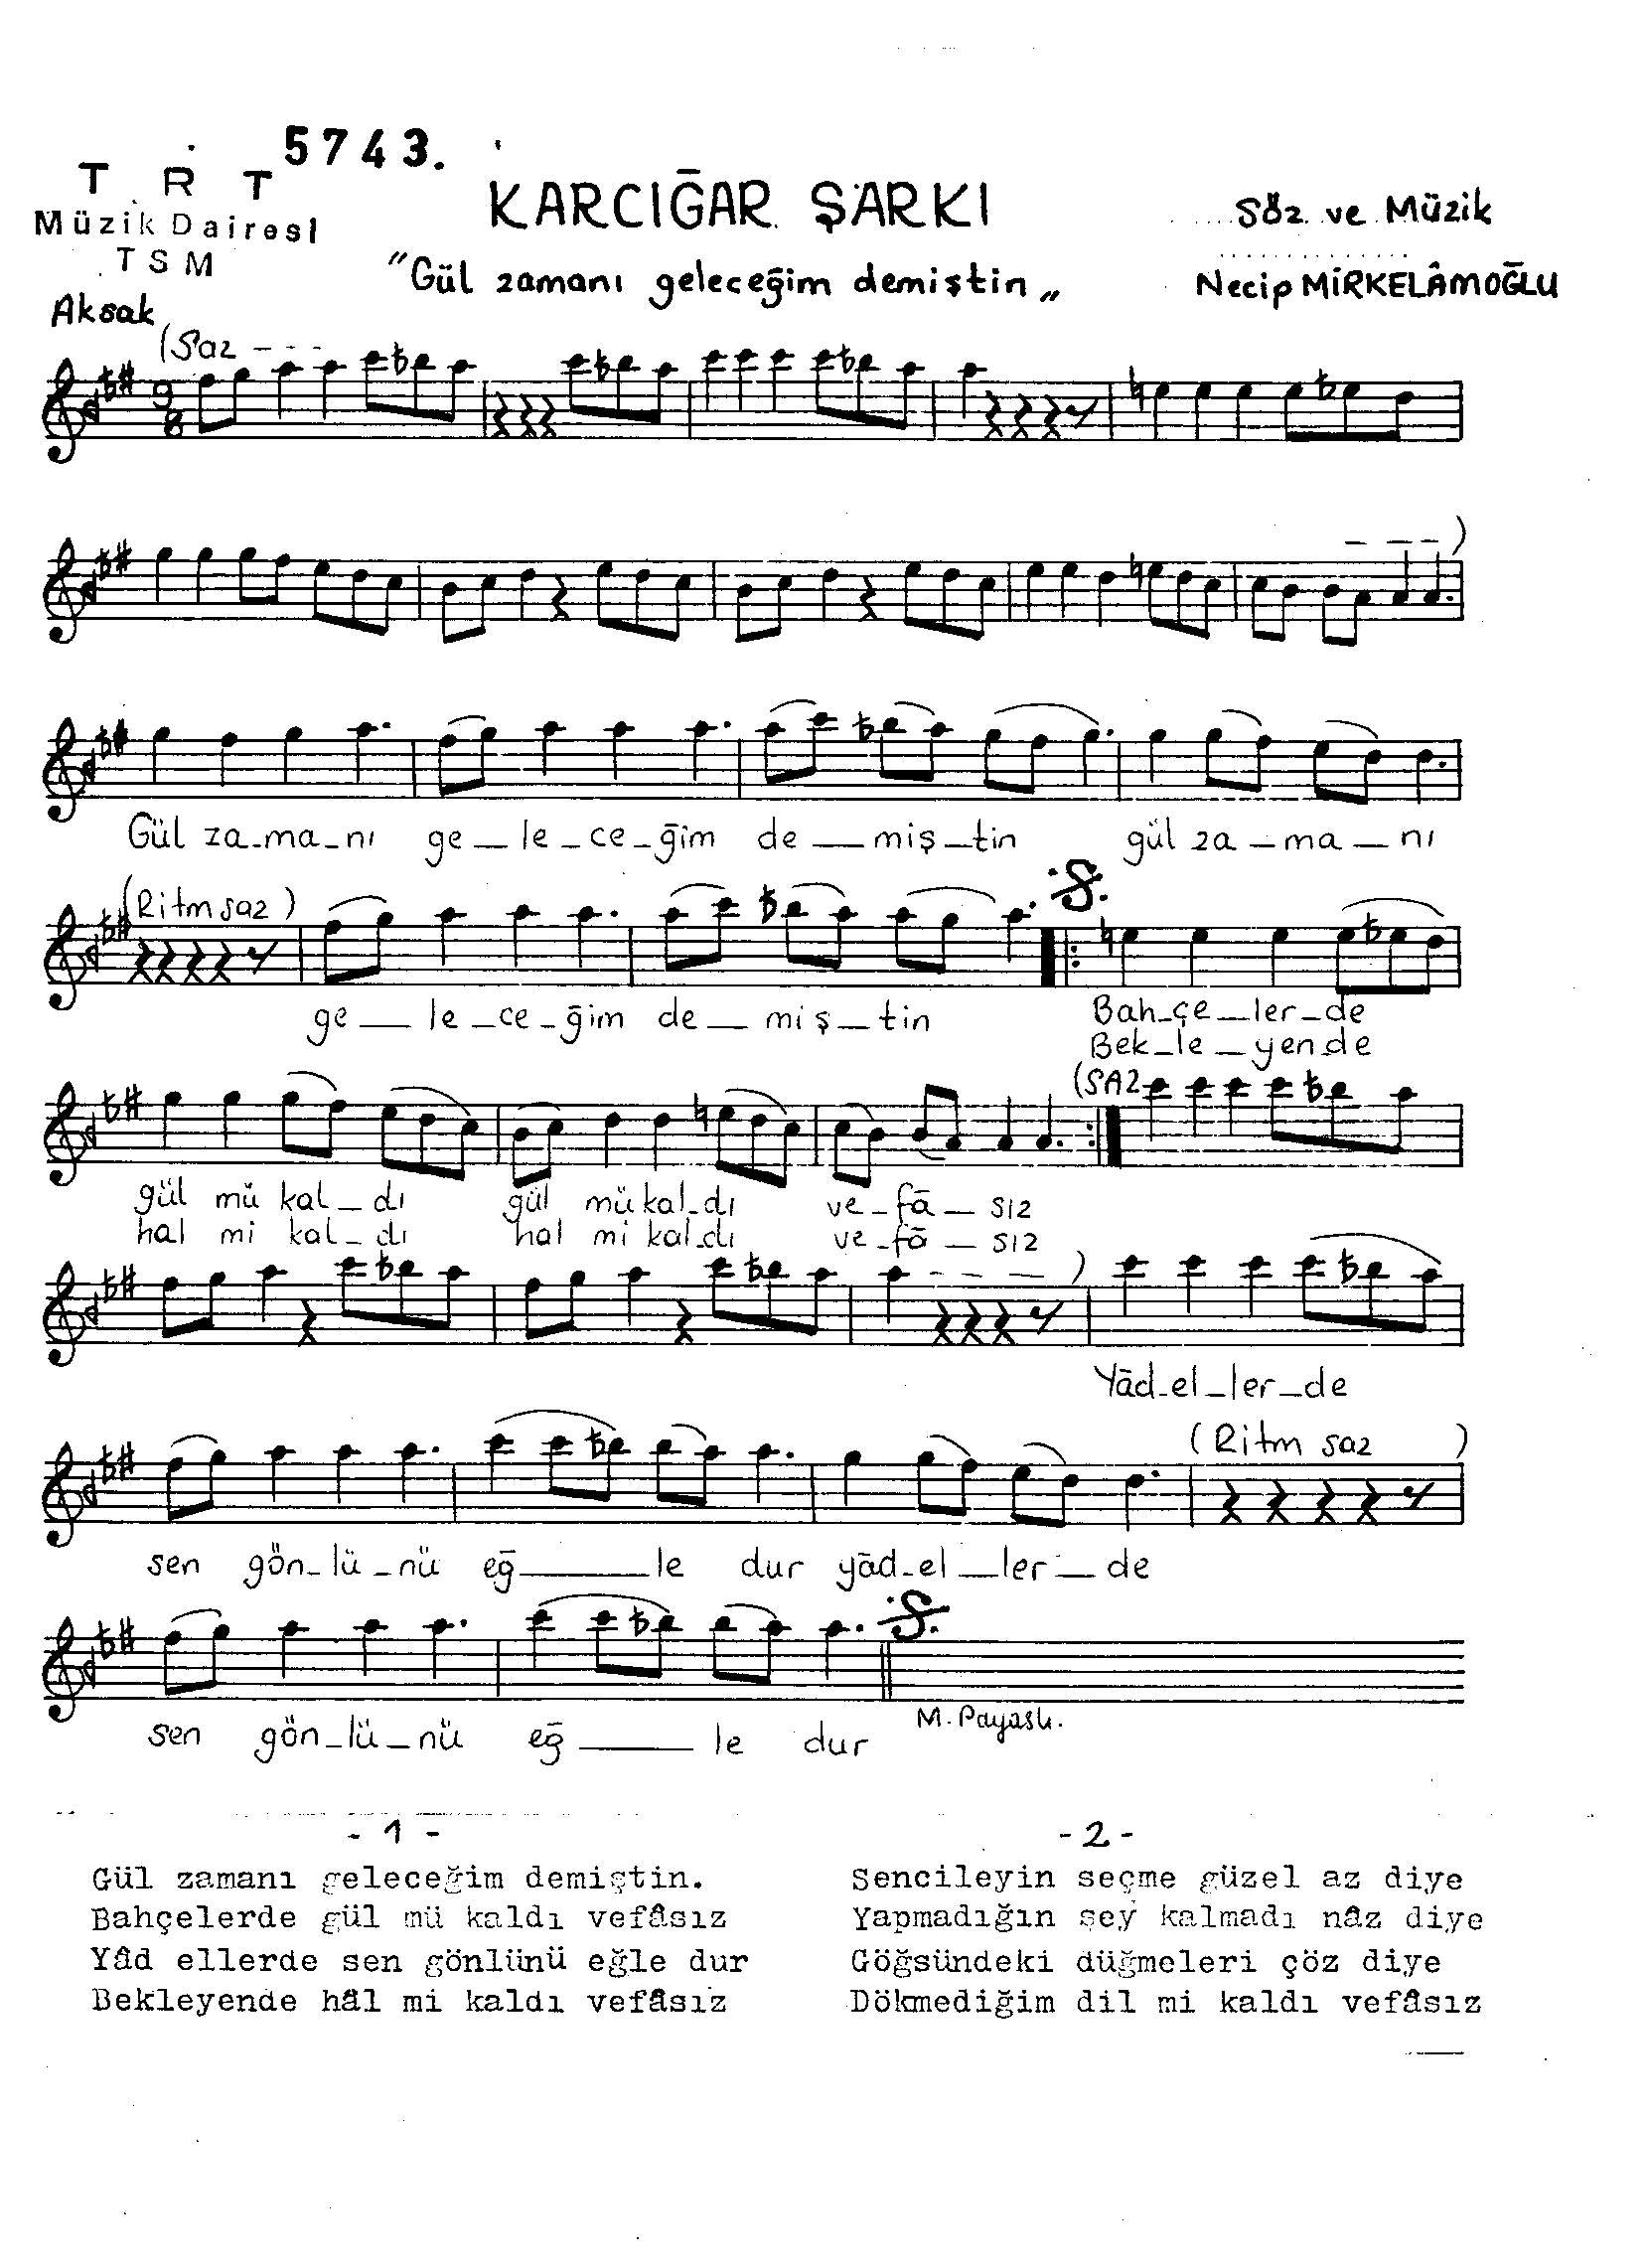 Karcığar - Şarkı - Necip Mirkelâmoğlu - Sayfa 1